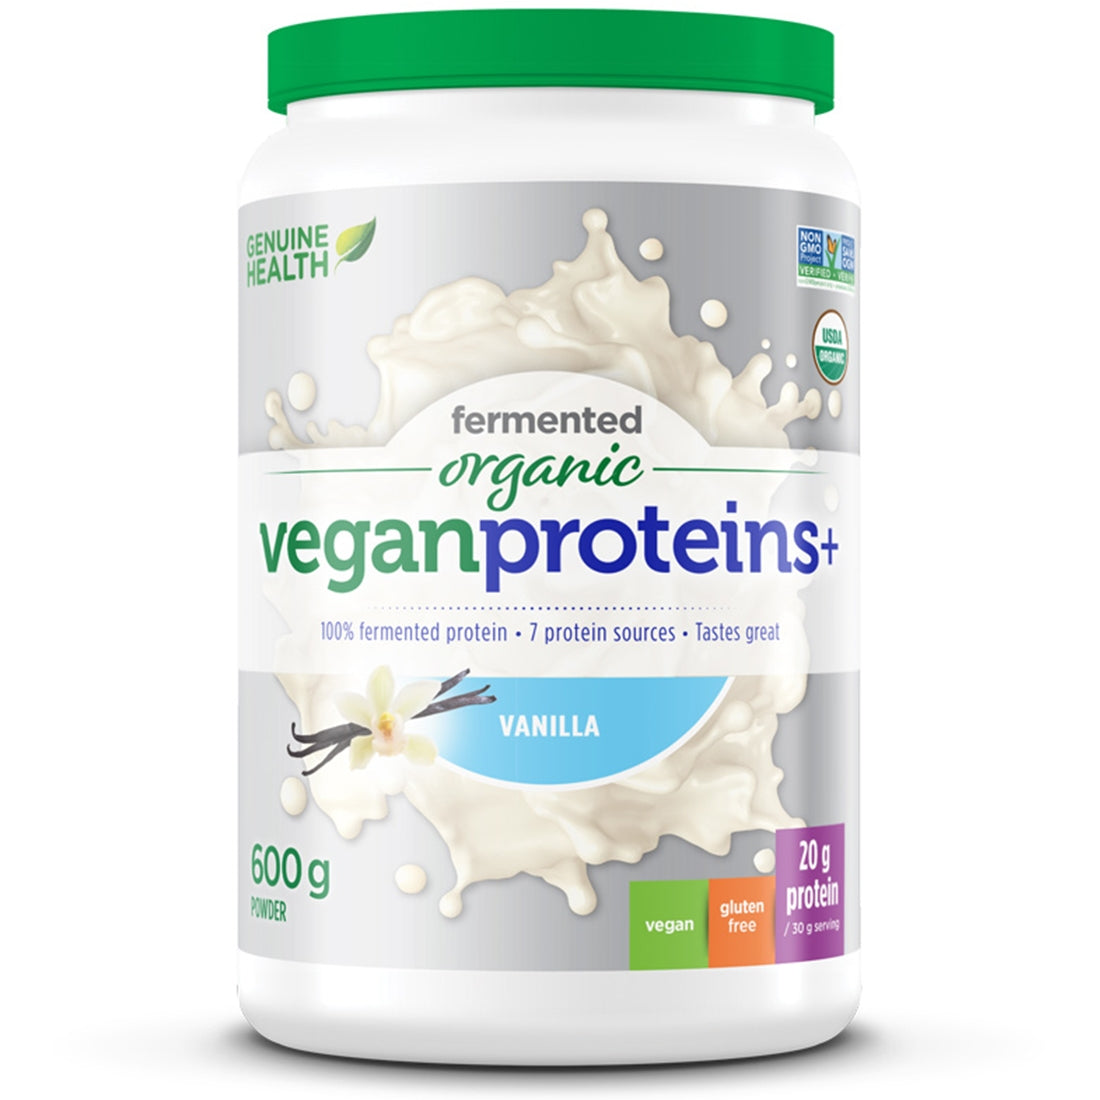 Vanilla 600g | Genuine Health Fermented Organic Vegan Proteins // vanilla flavour